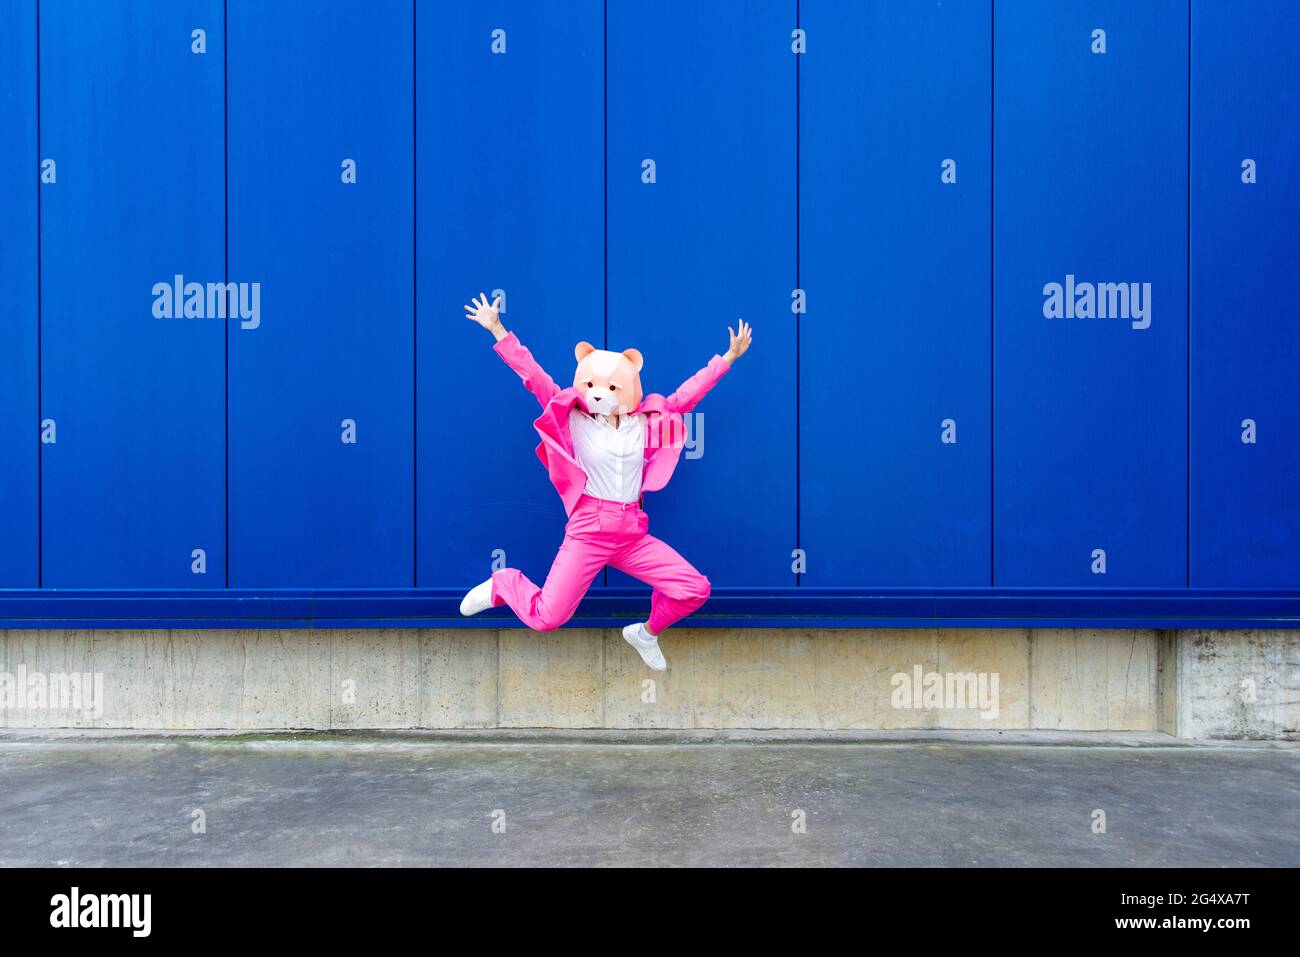 Femme portant un costume rose vif et un masque d'ours sautant contre le mur bleu Banque D'Images